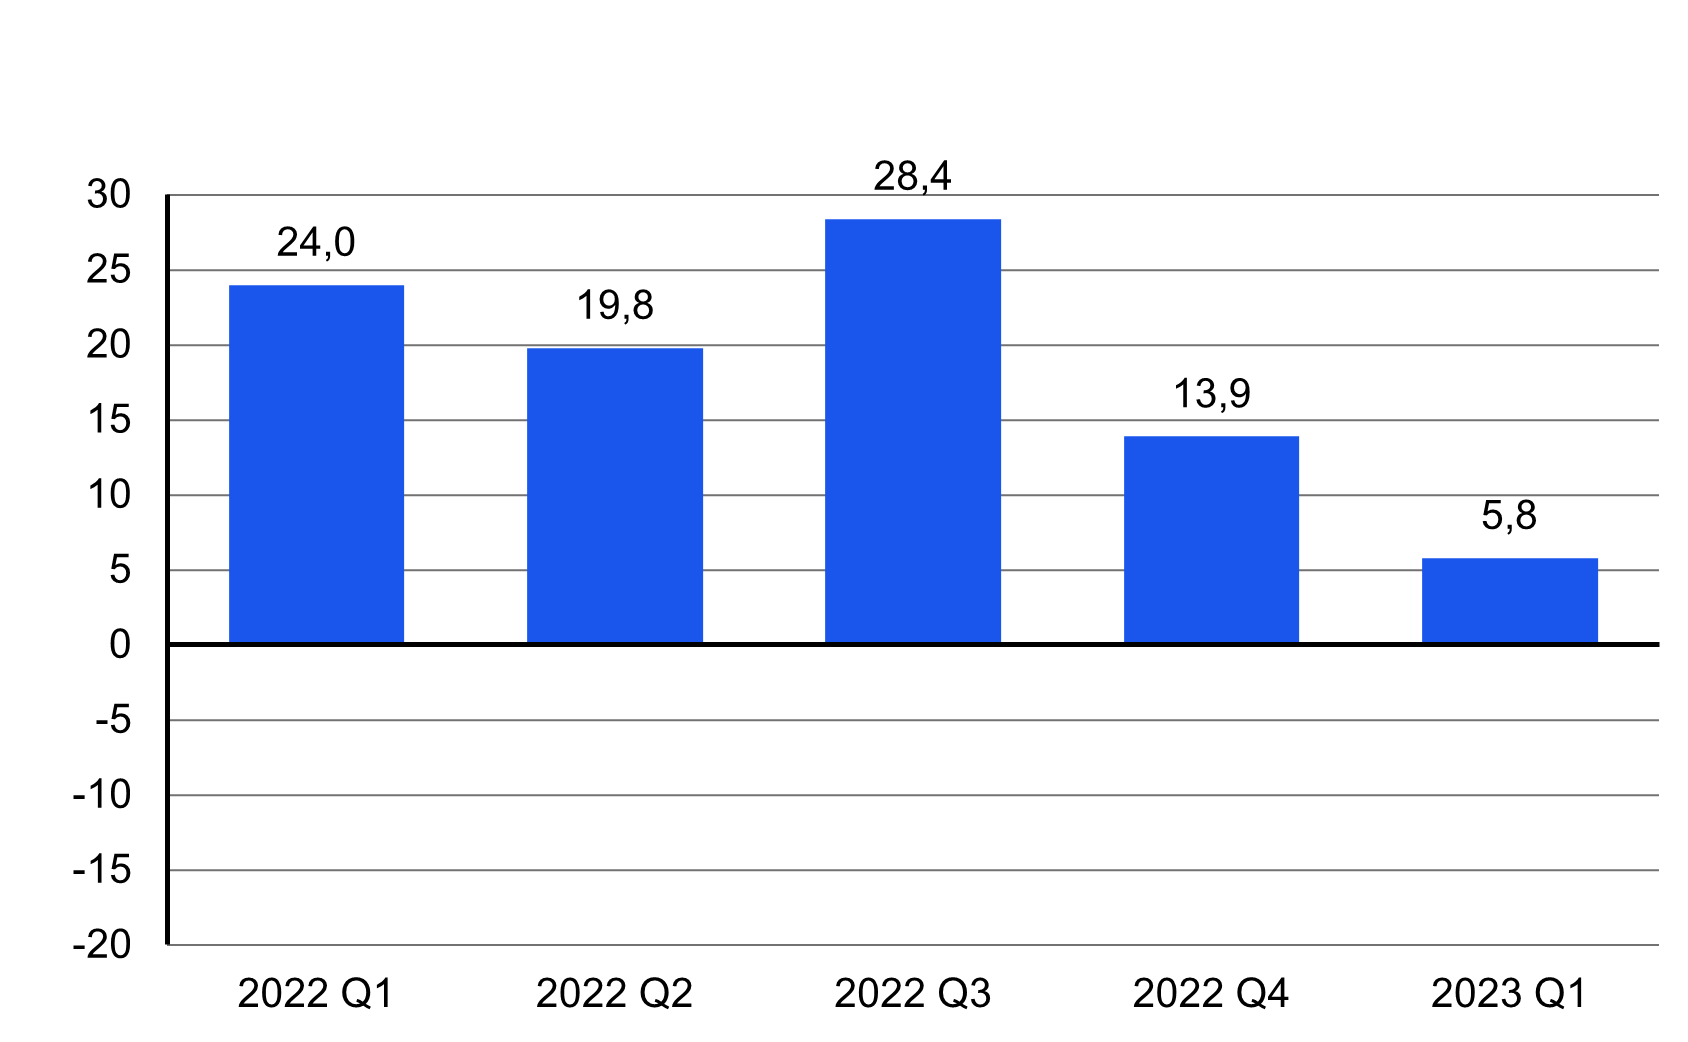 Yritysten investointien vuosimuutos vuosineljänneksittäin 2022 Q1 – 2023 Q1: yritysten tekemät investoinnit kasvoivat vuoden 2023 ensimmäisellä neljänneksellä 5,8 prosenttia vuodentakaiseen verrattuna.